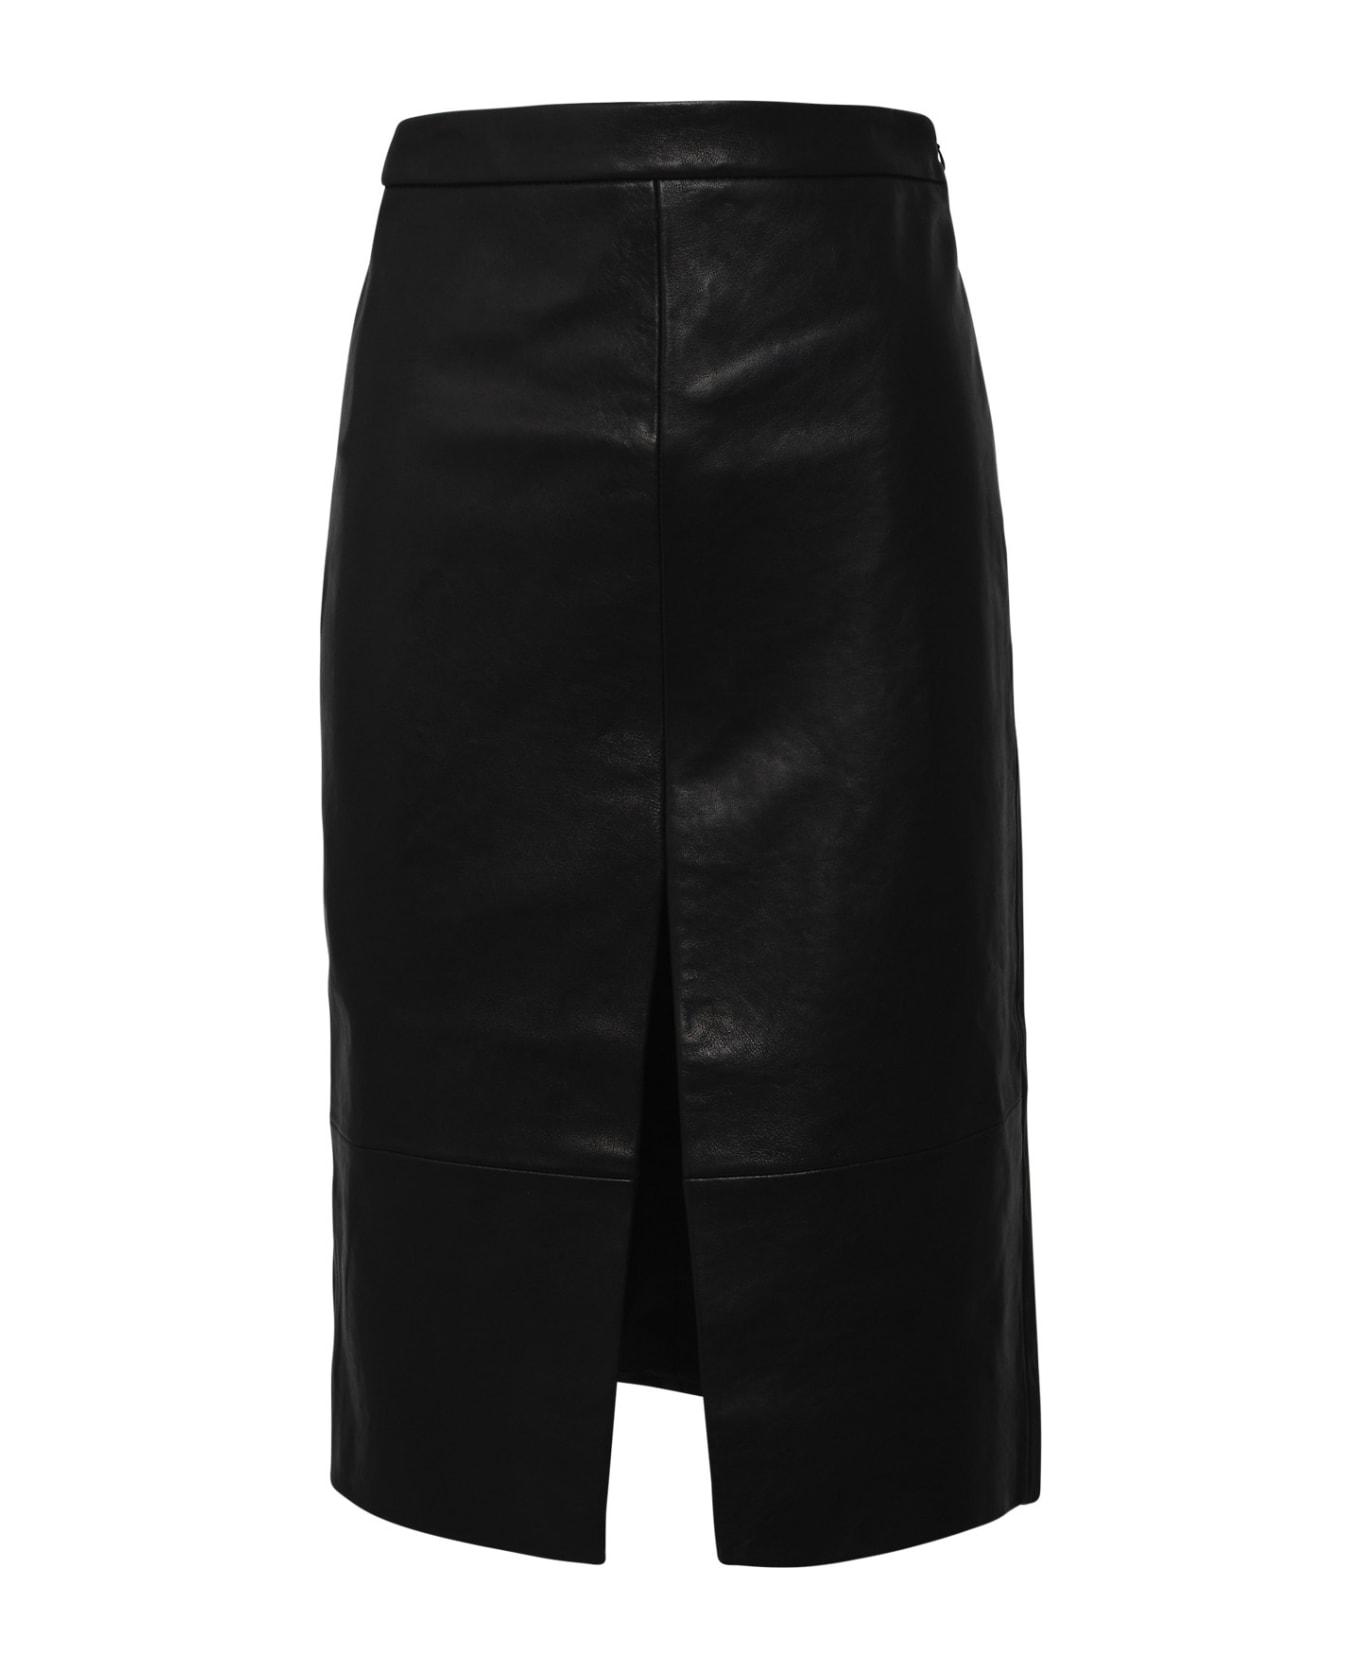 Khaite Freser Black Leather Skirt - Black